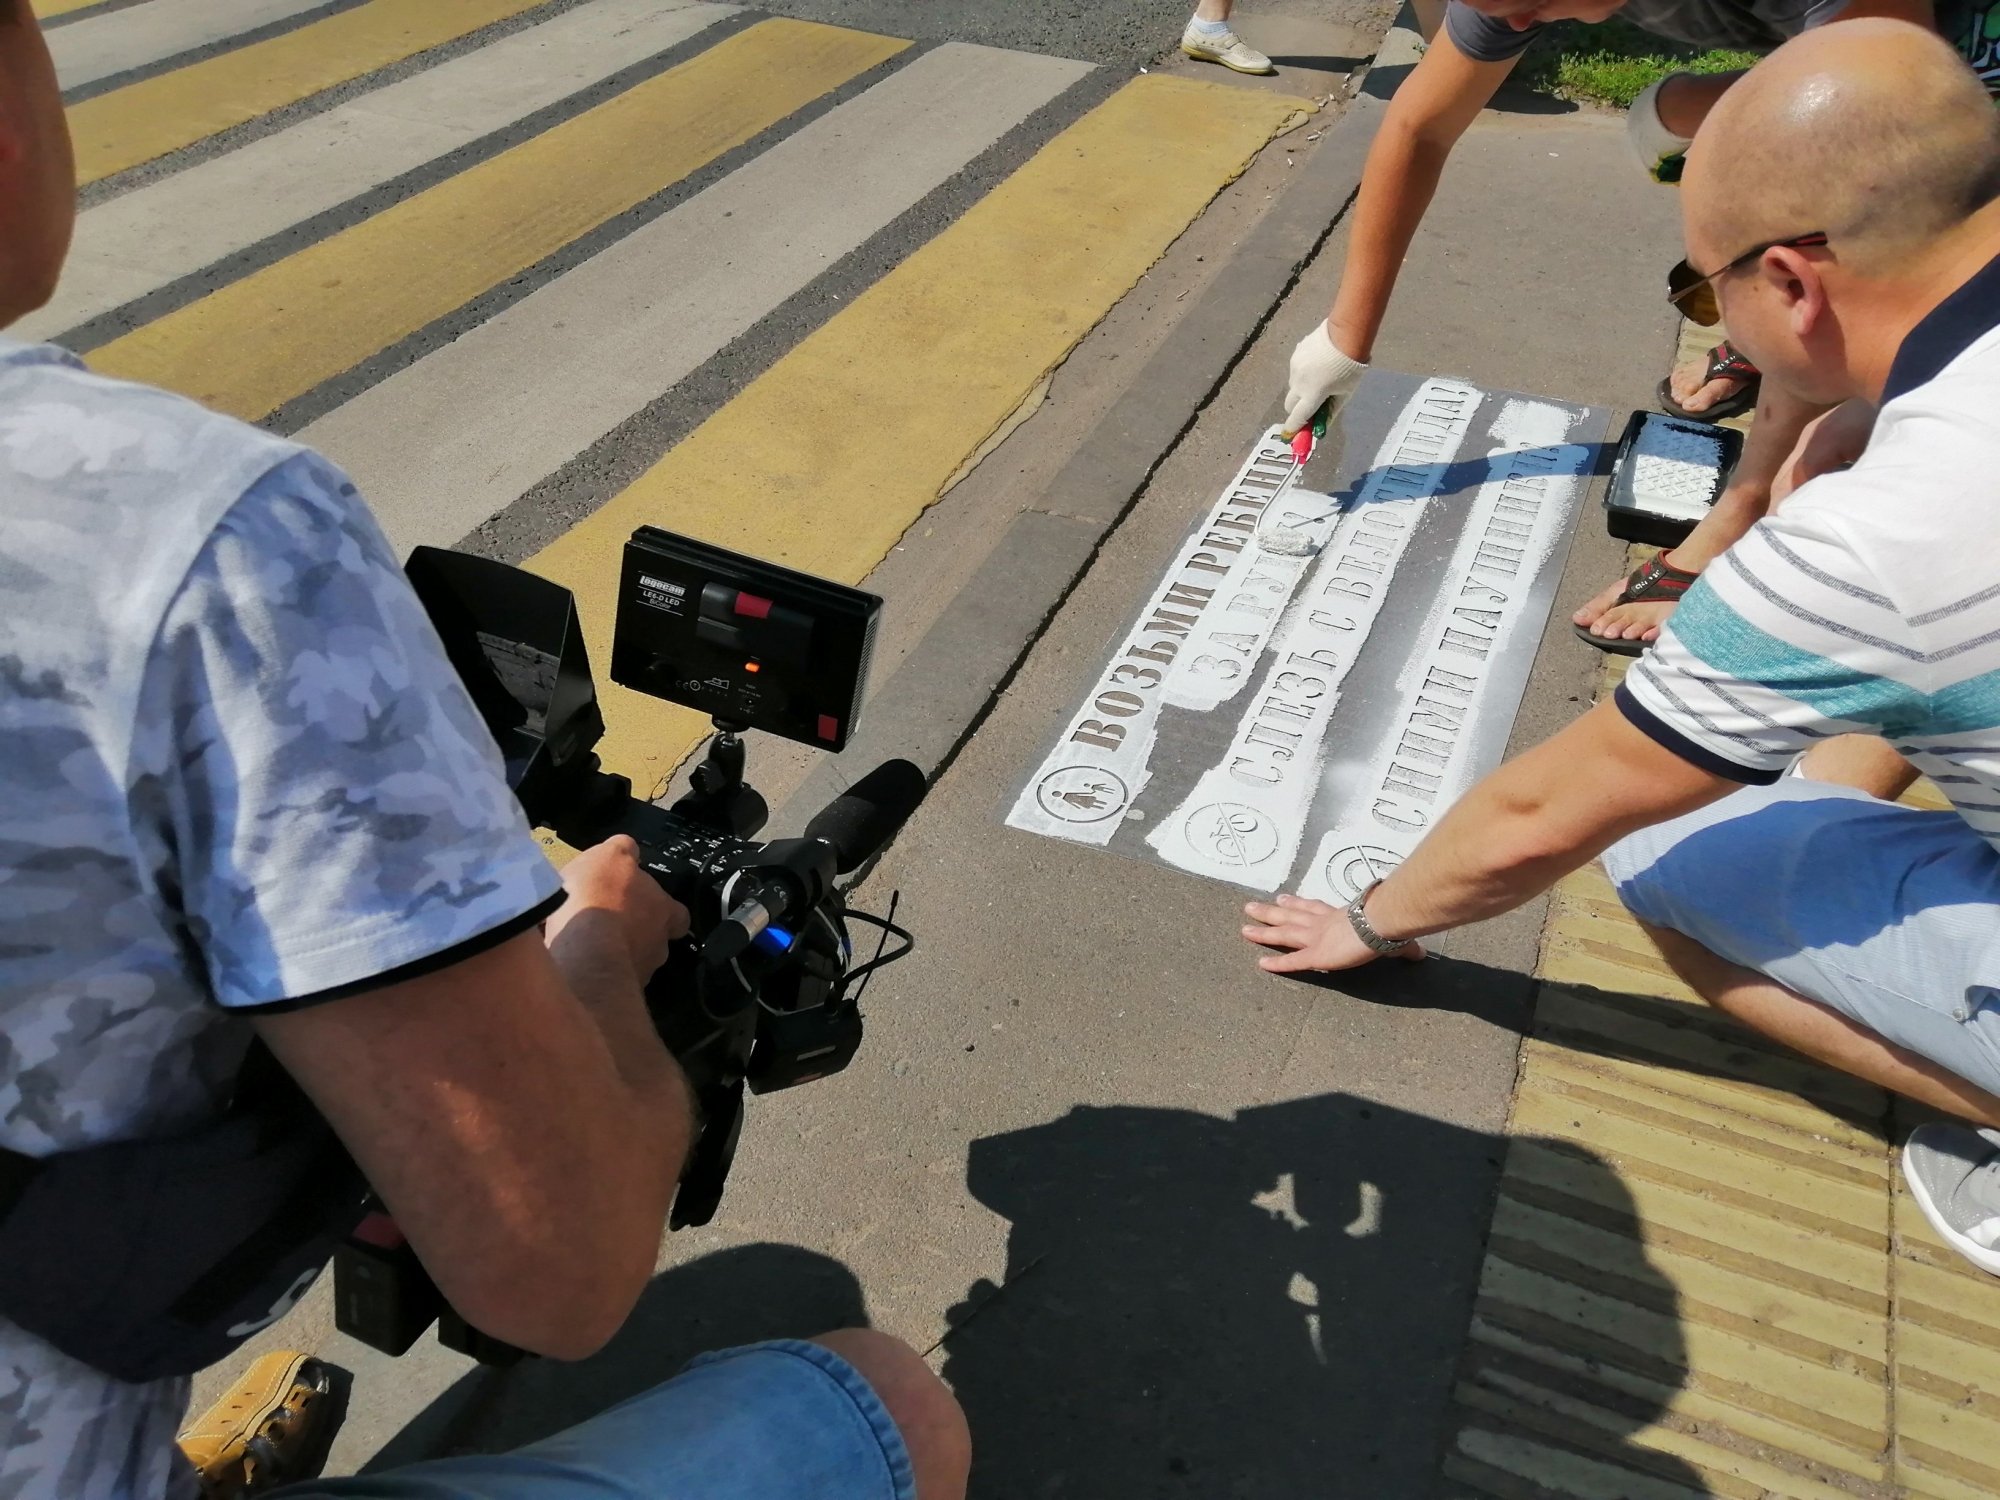 ГИБДД и активисты рисуют на тротуарах в Челнах надписи-предупреждения